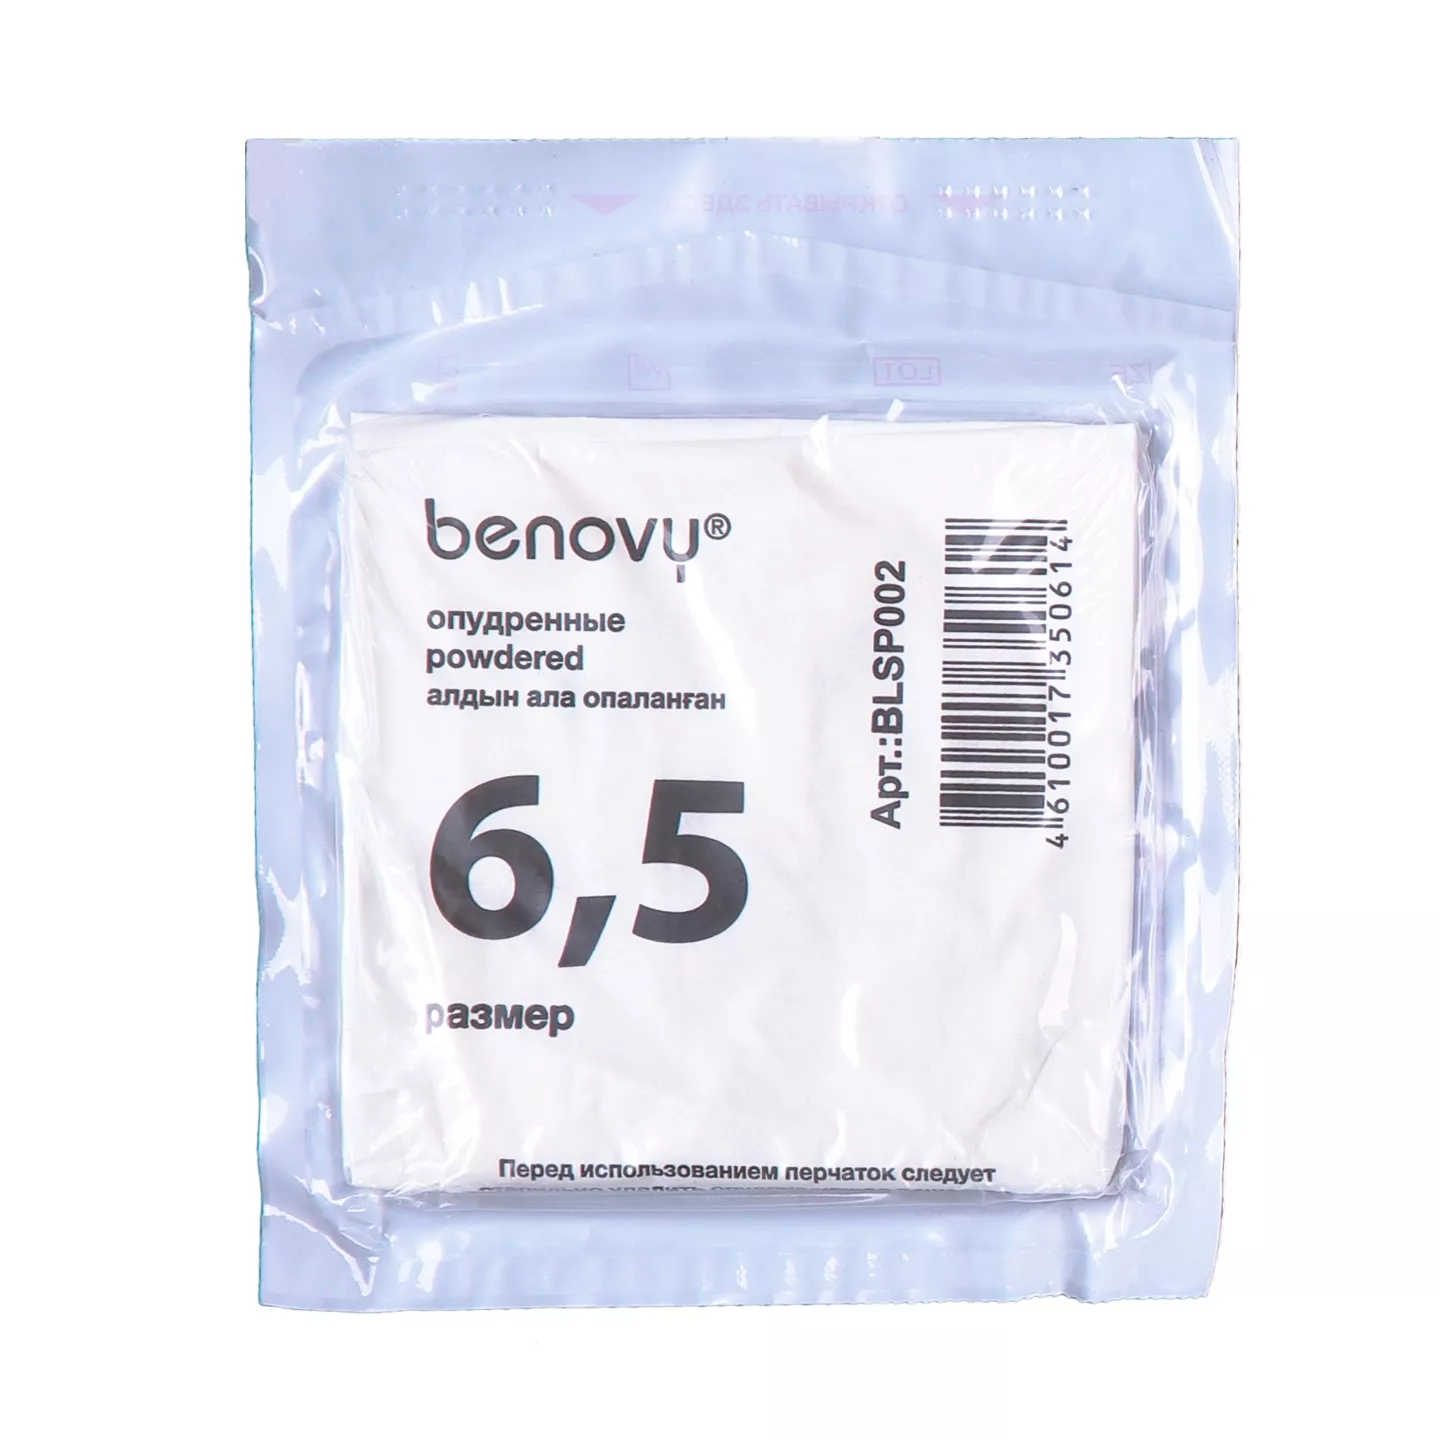 Перчатки BENOVY Термоформ хирургические, размер 6,5 латексные опудренные текстурированные, цвет белый, стерильные